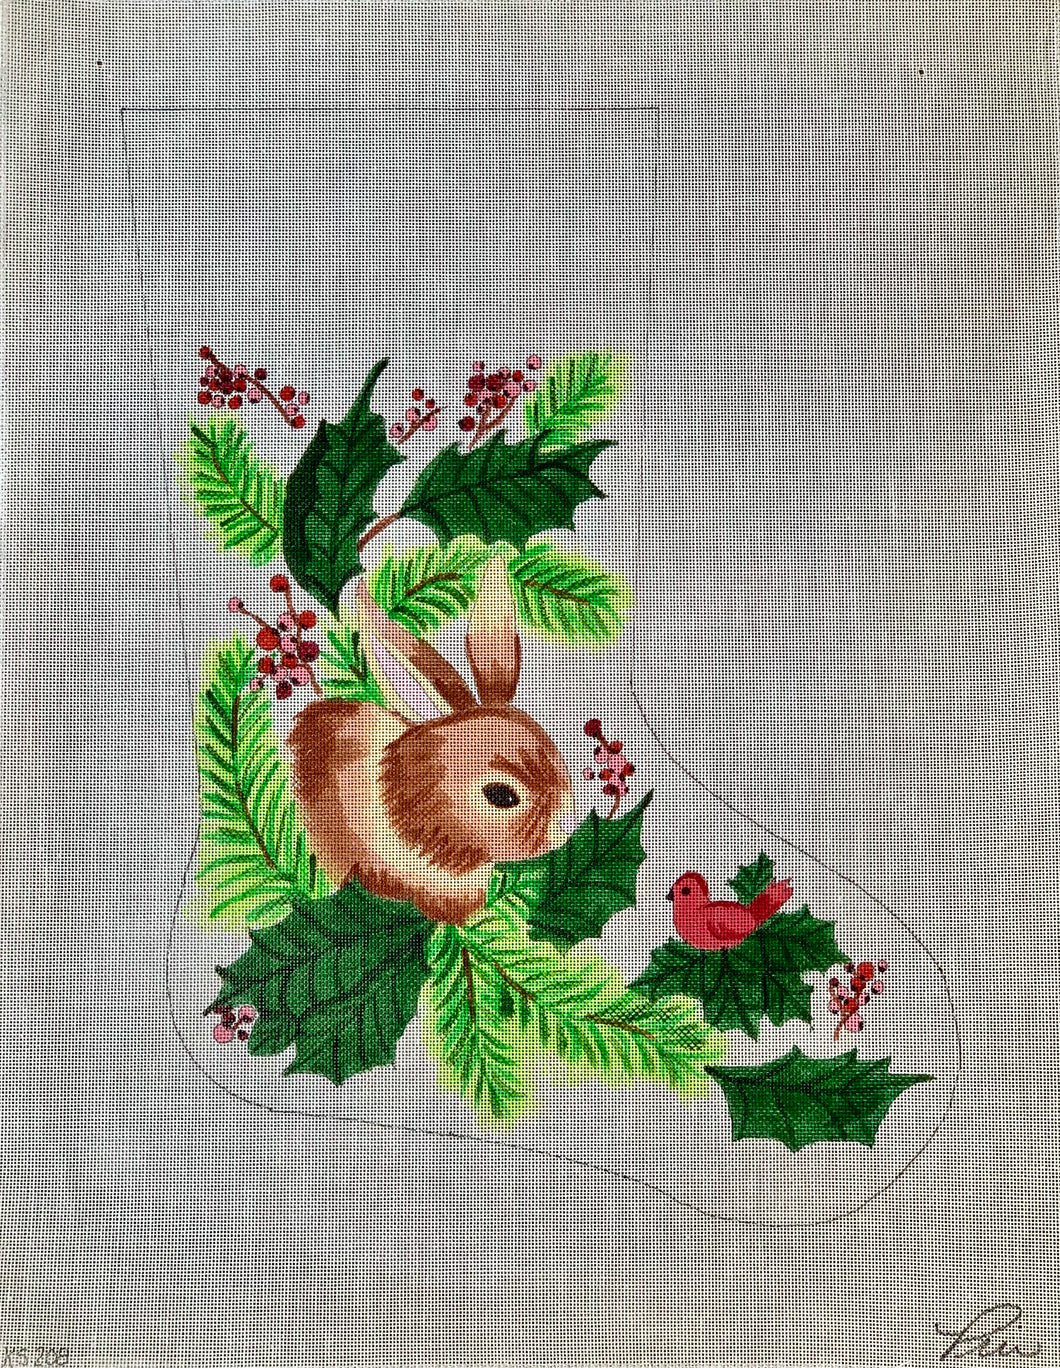 Bunny Stocking